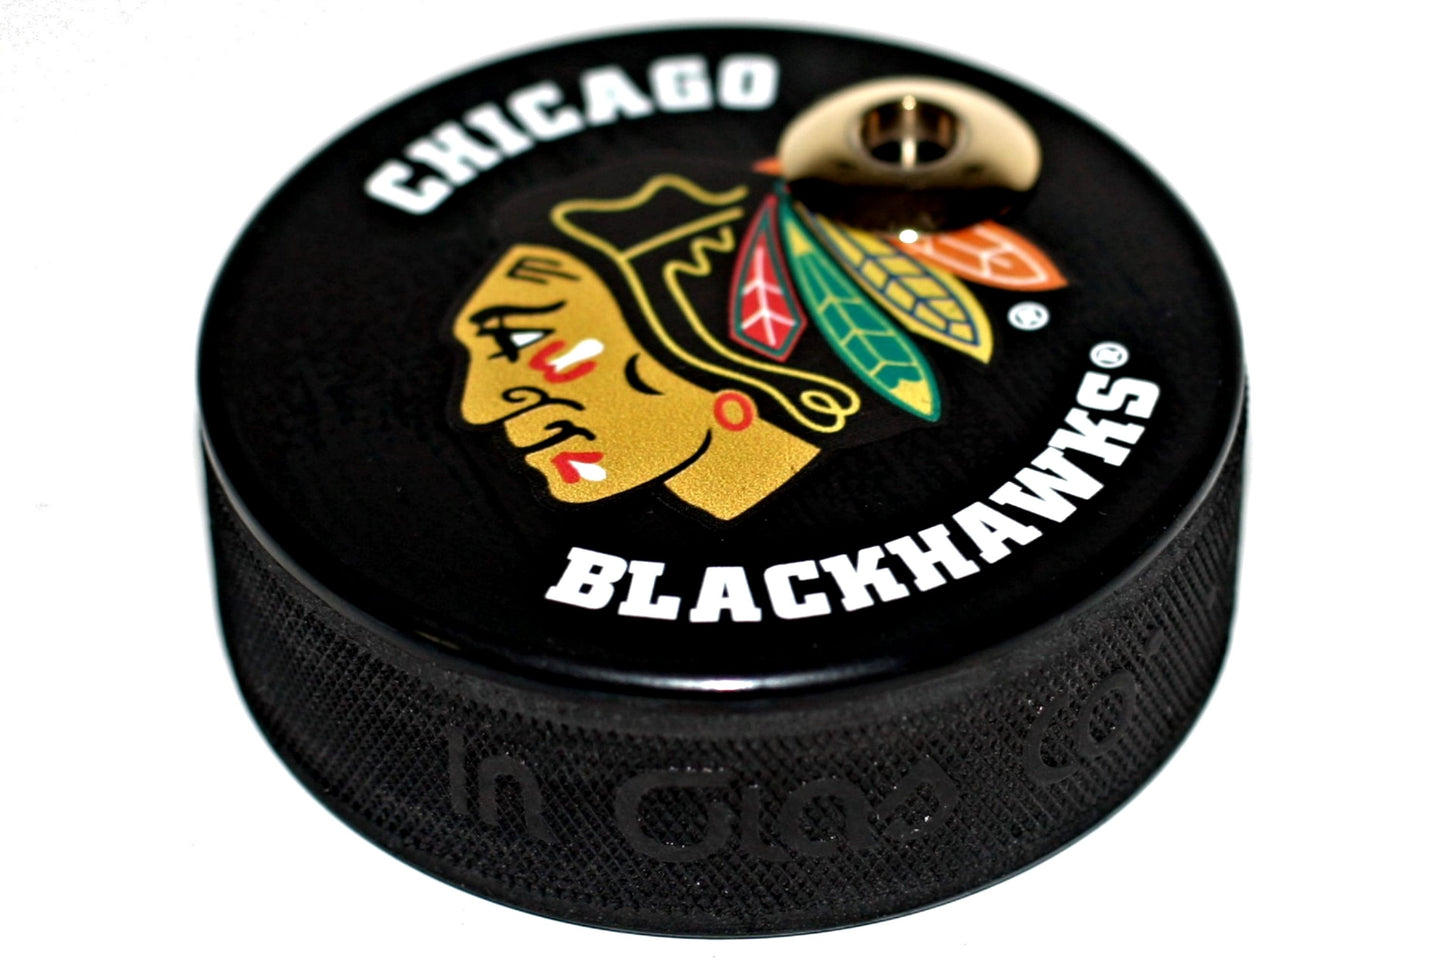 Chicago Blackhawks Basic Series Artisan Hockey Puck Desk Pen Holder